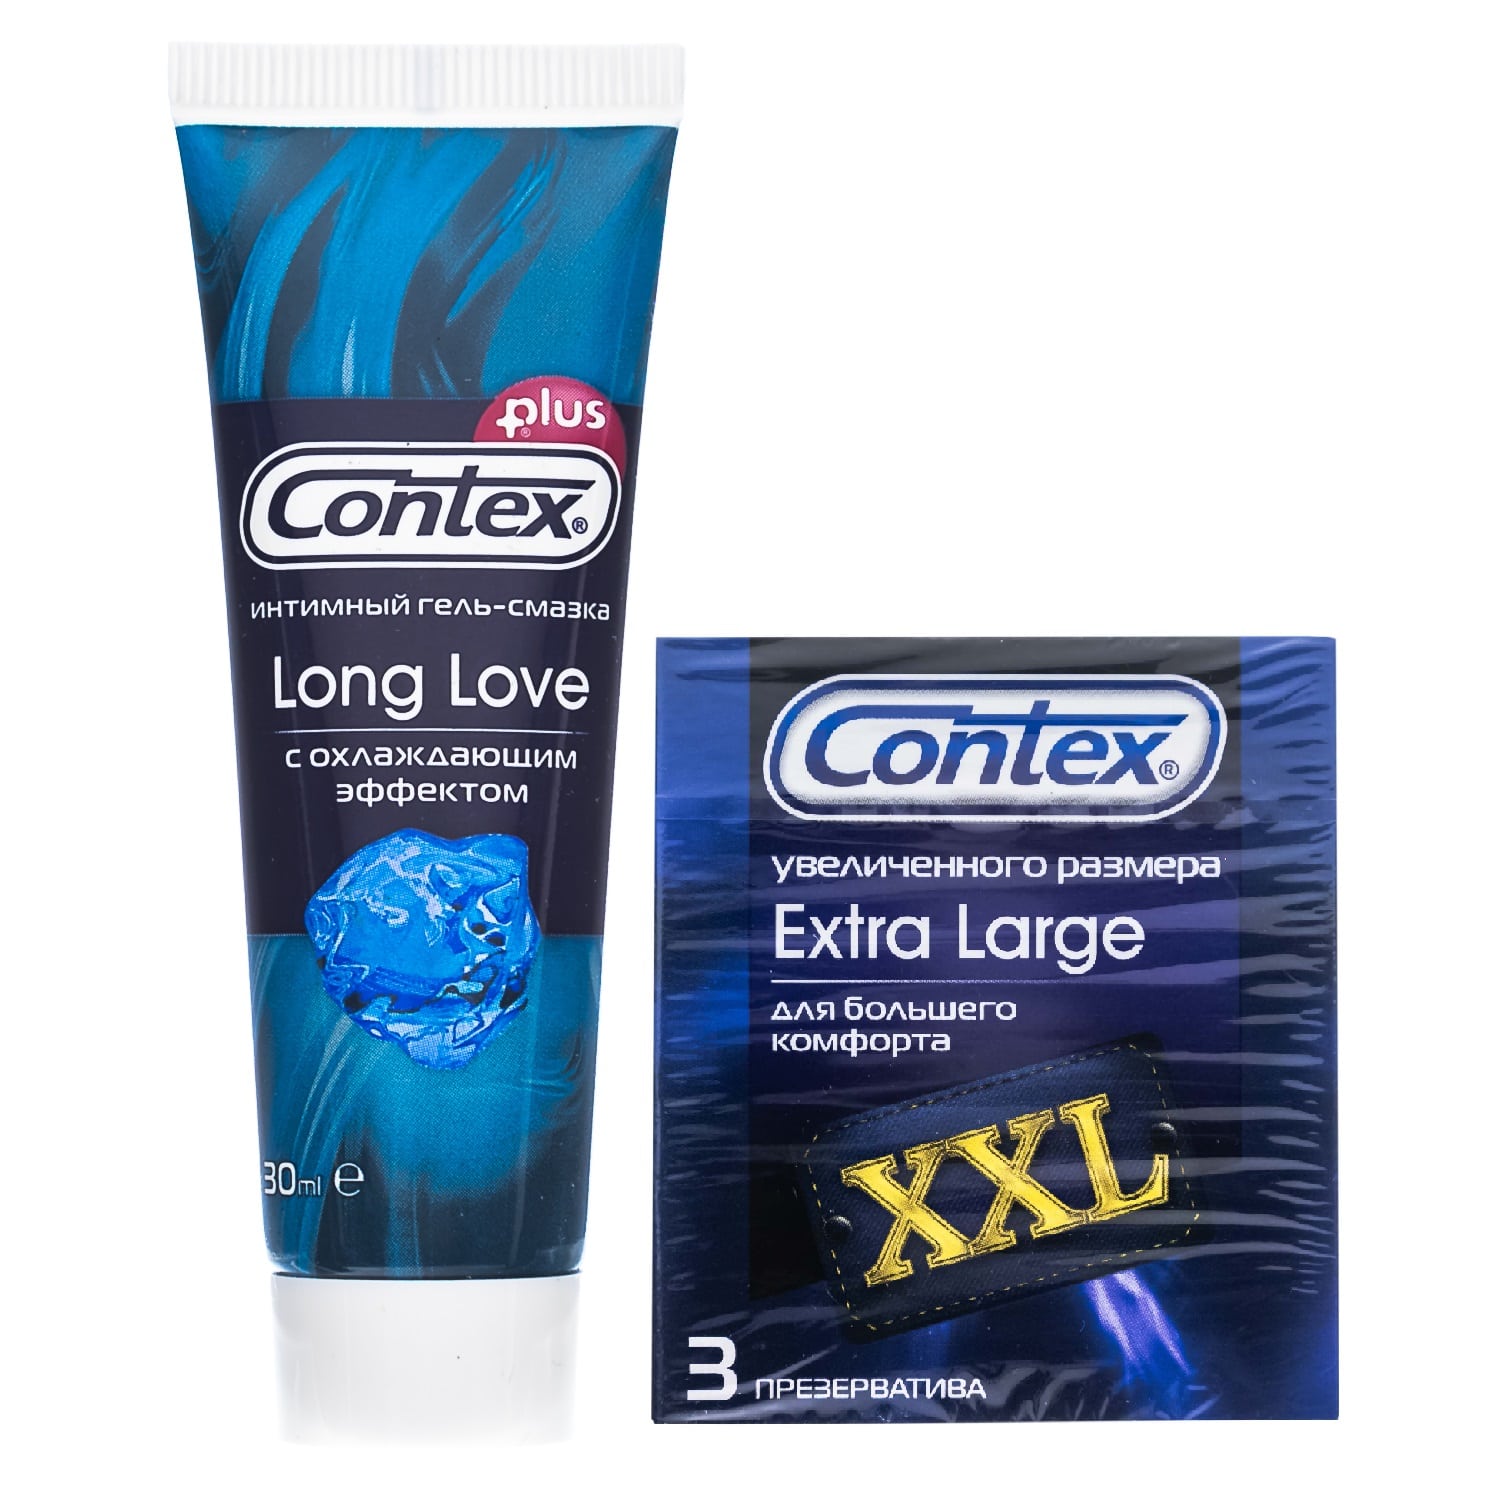 презервативы extra large гладкие увеличенного размера 3шт Contex Набор: презервативы Extra Large XXL №3 + гель-смазка продлевающий акт 30 мл (Contex, Презервативы)